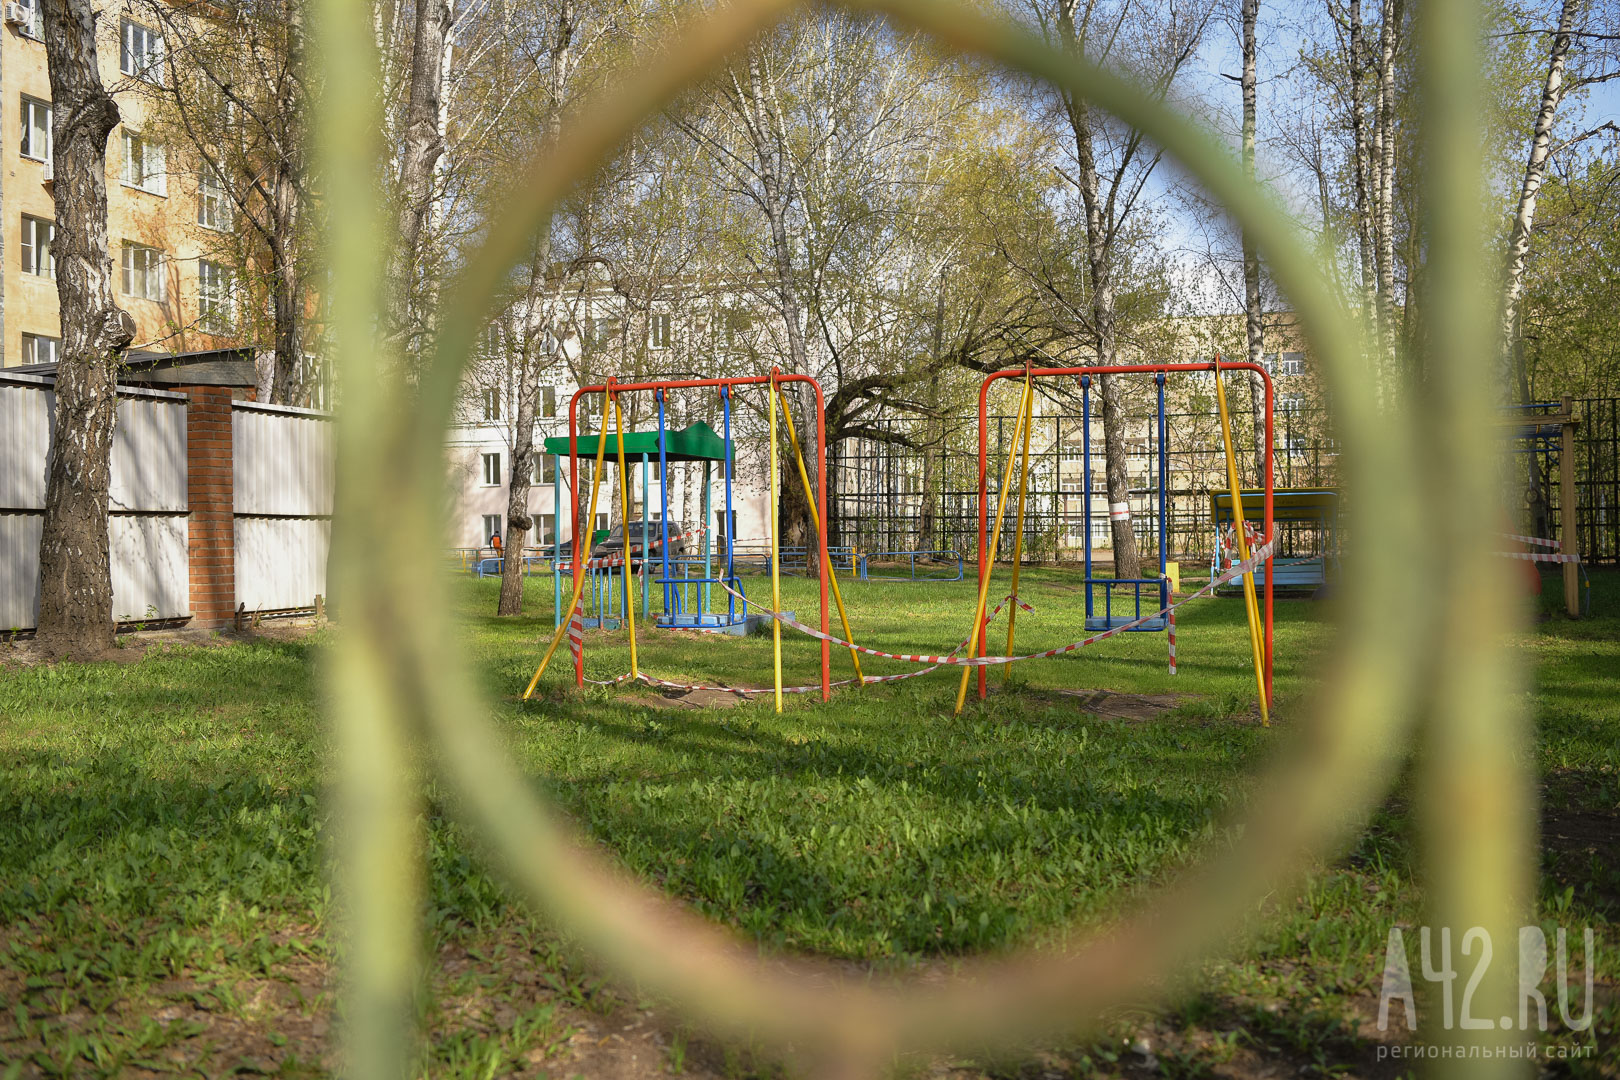 Кузбассовцы пожаловались на опасную детскую площадку, которая разваливается